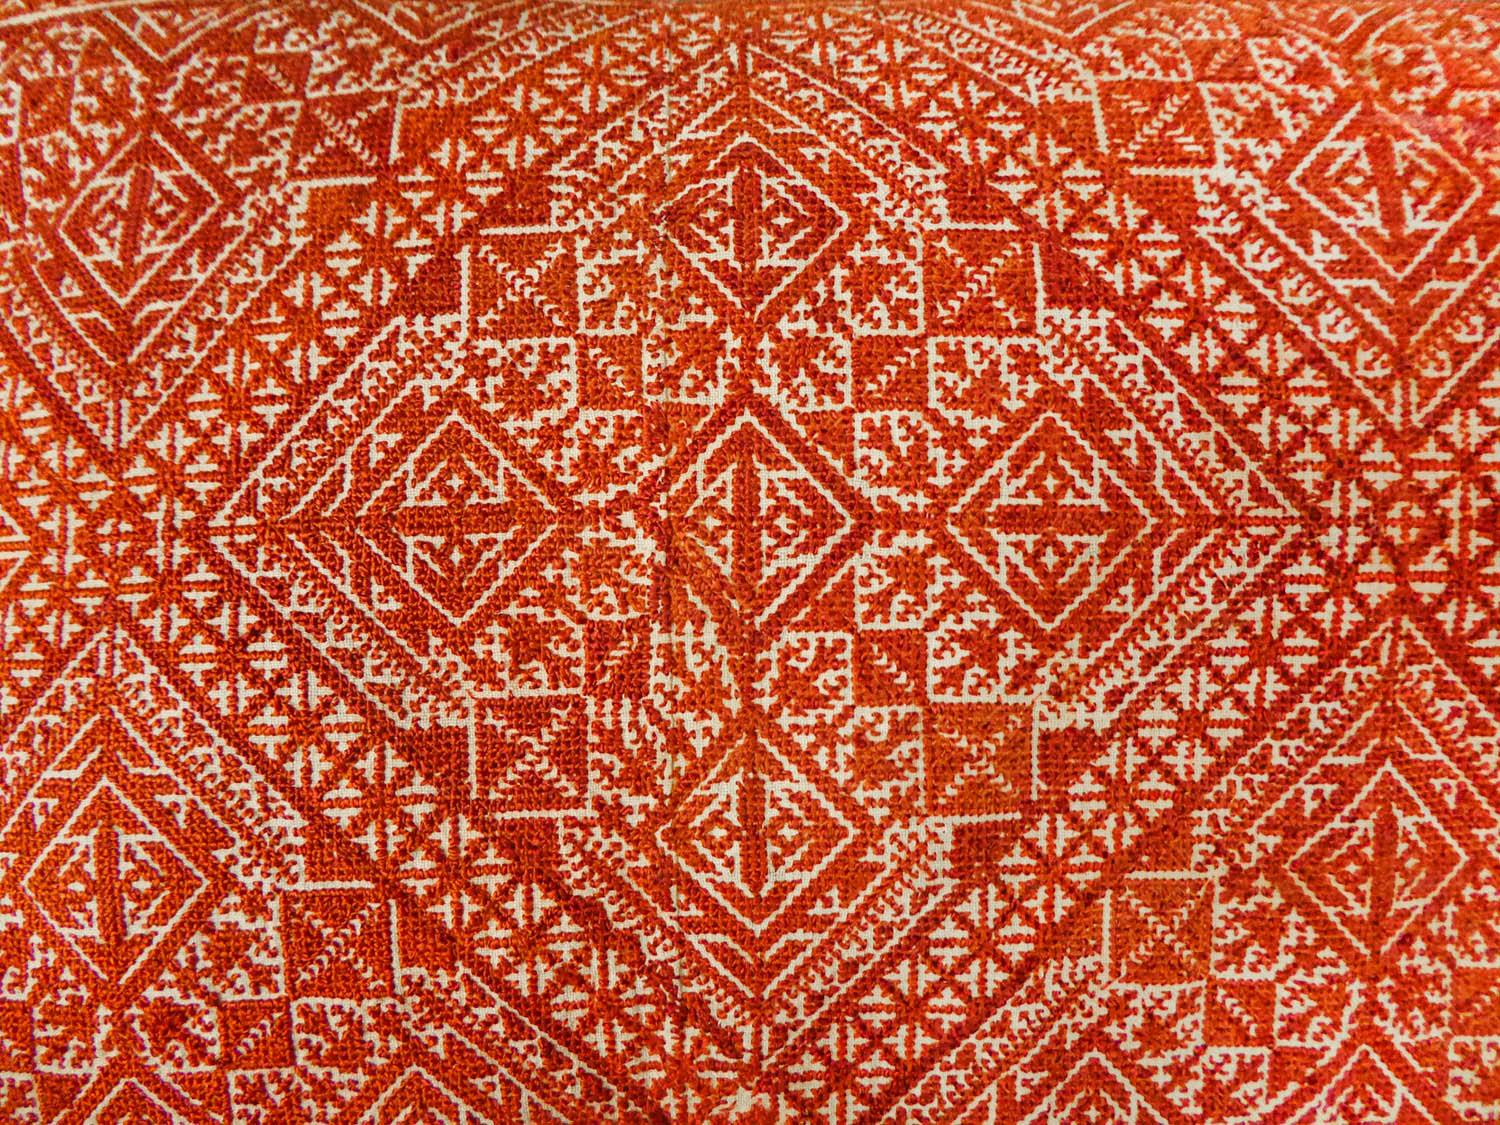 Kissen mit Stickereien aus Fez – Marokko, um 1900 (Braun)